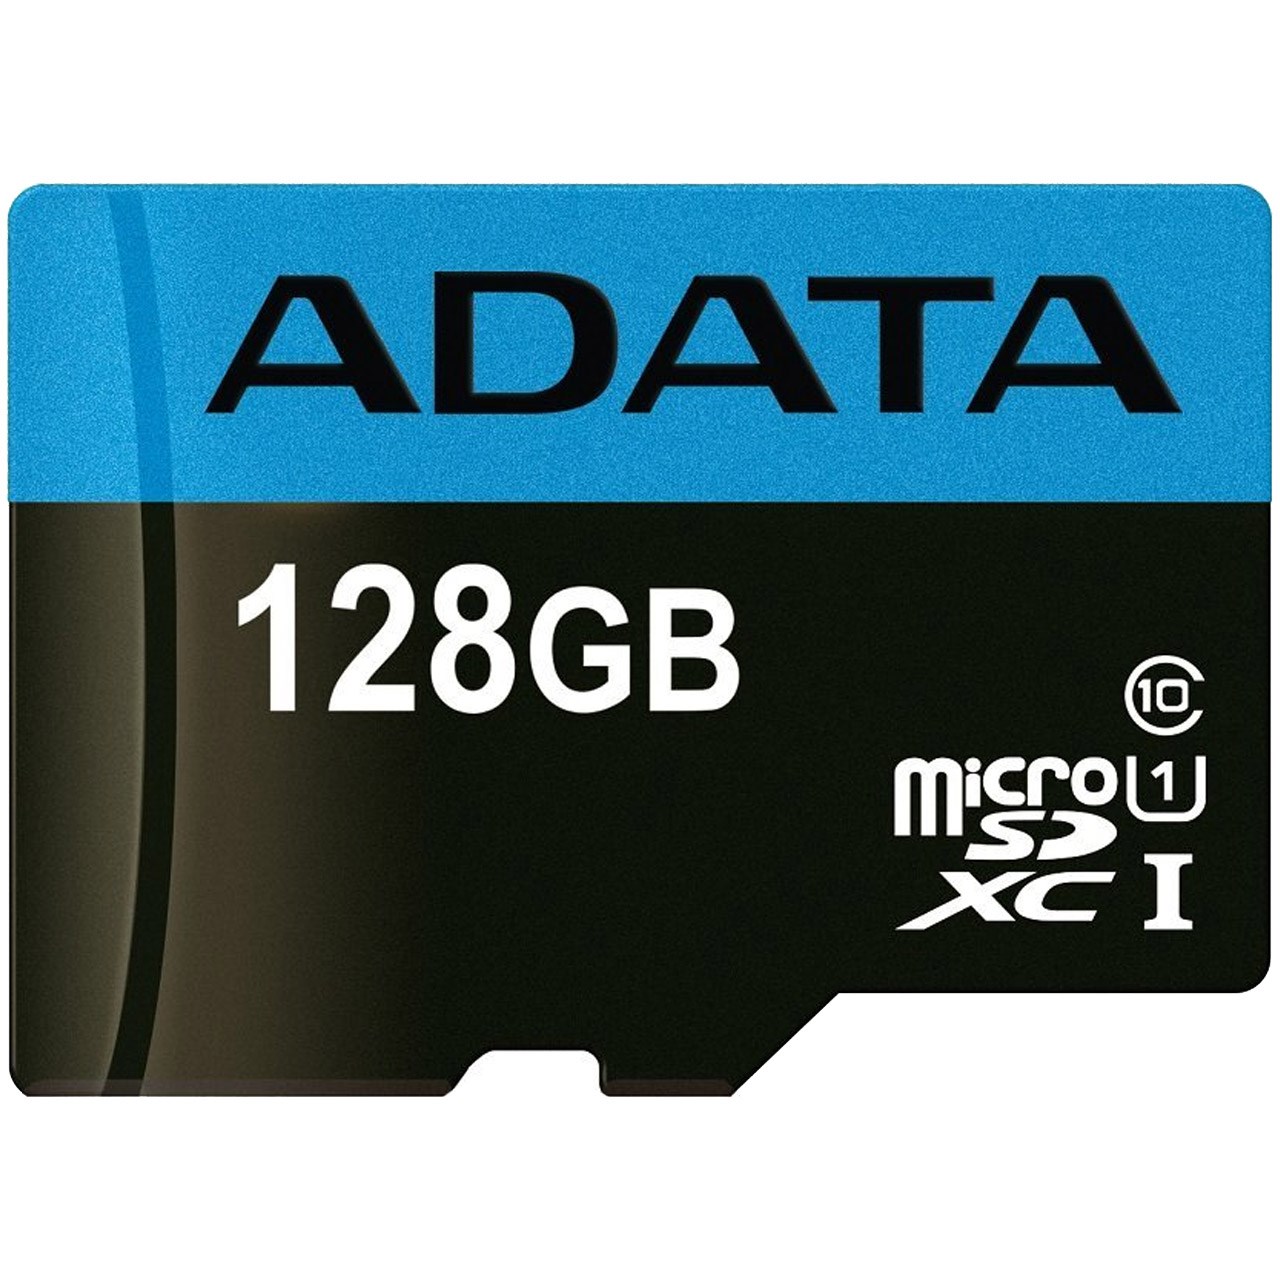 کارت حافظه microSDXC ای دیتا مدل Premier کلاس 10 استاندارد UHS-I U1 سرعت 85MBps ظرفیت 128 گیگابایت